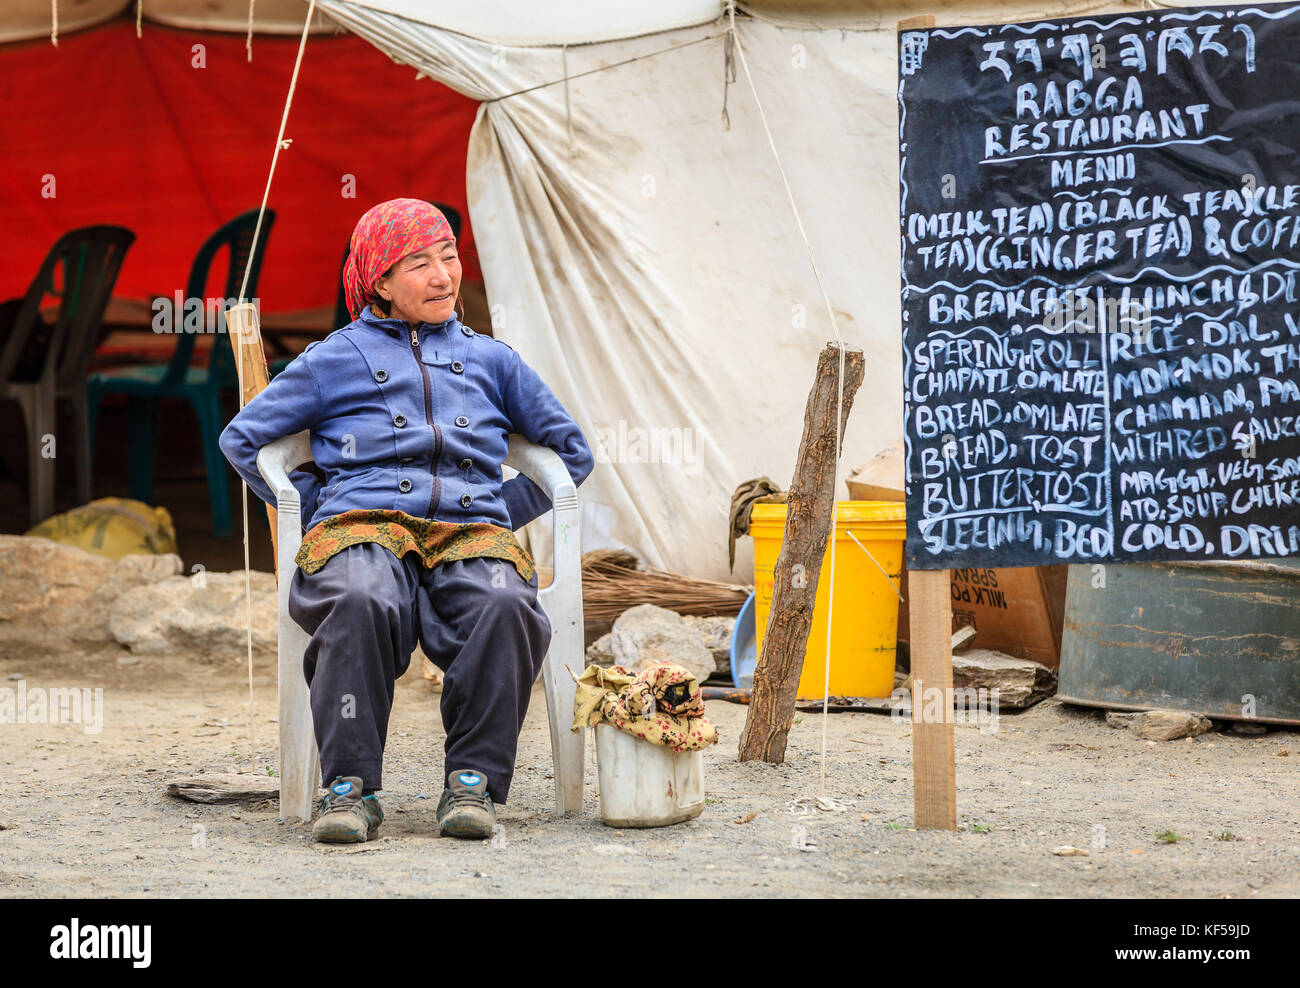 Le Ladakh, Inde, le 16 juillet 2016 : femme assise locale par le menu Se connecter d'une cantine en bordure de plateau changthang, Ladakh, Cachemire, Inde Banque D'Images